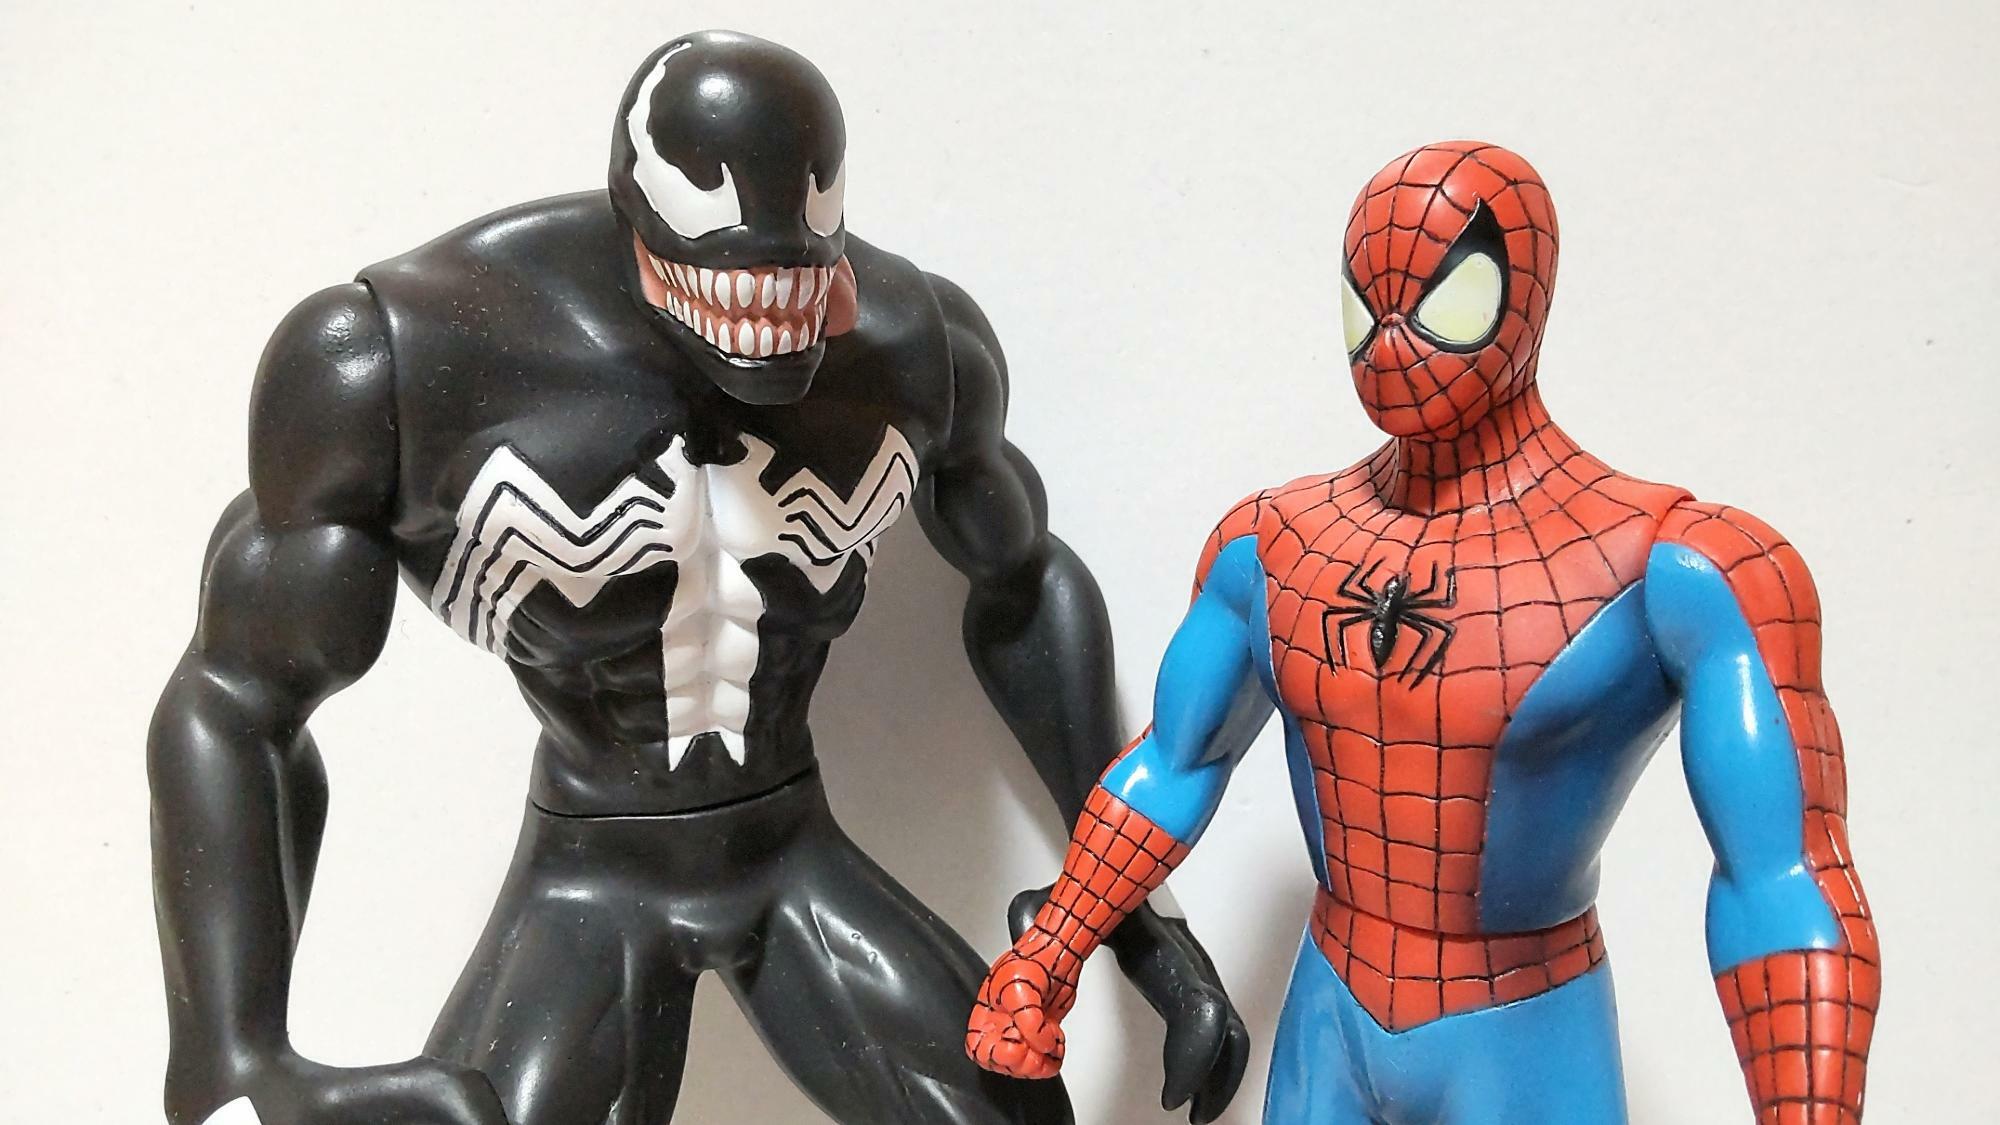 USJ内で販売された、コミック版スパイダーマン（右）とその宿敵ヴェノム（左）のソフトビニール人形。近年の実写映画にはない、愛苦しささえ感じる温かな造型（筆者撮影）。